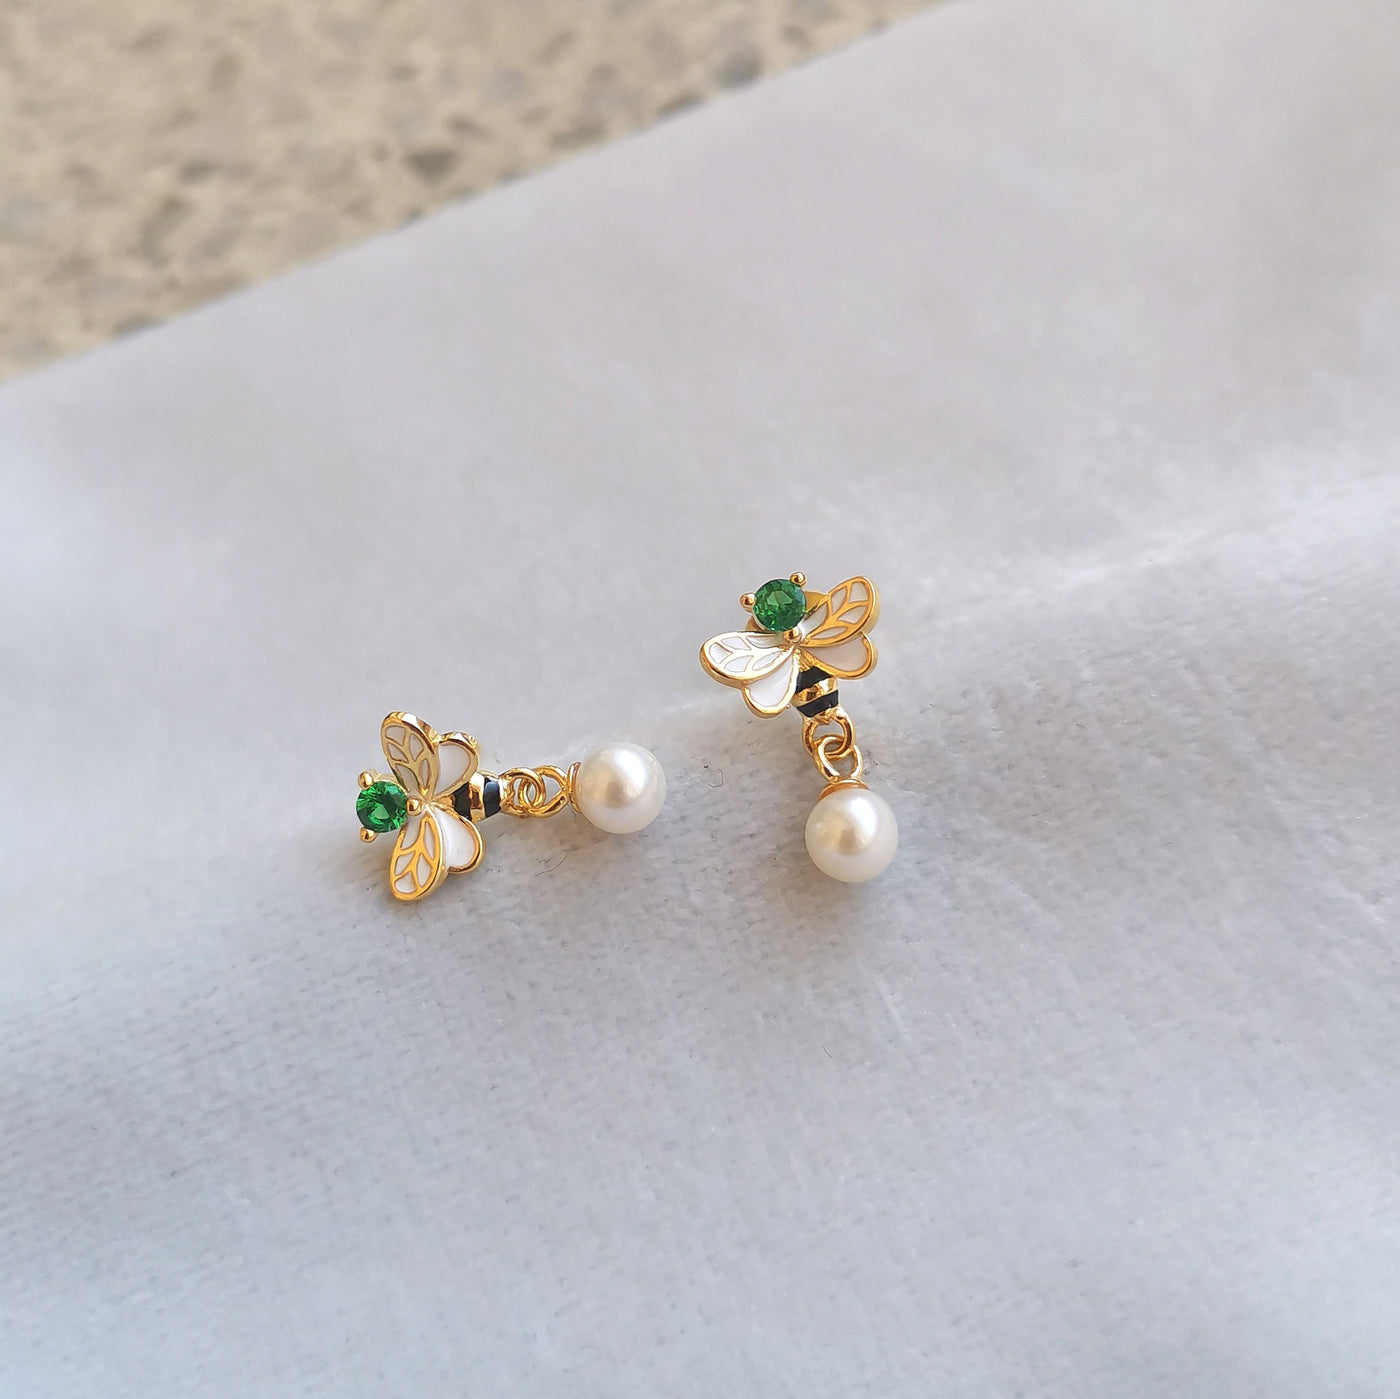 BumbleBee earrings